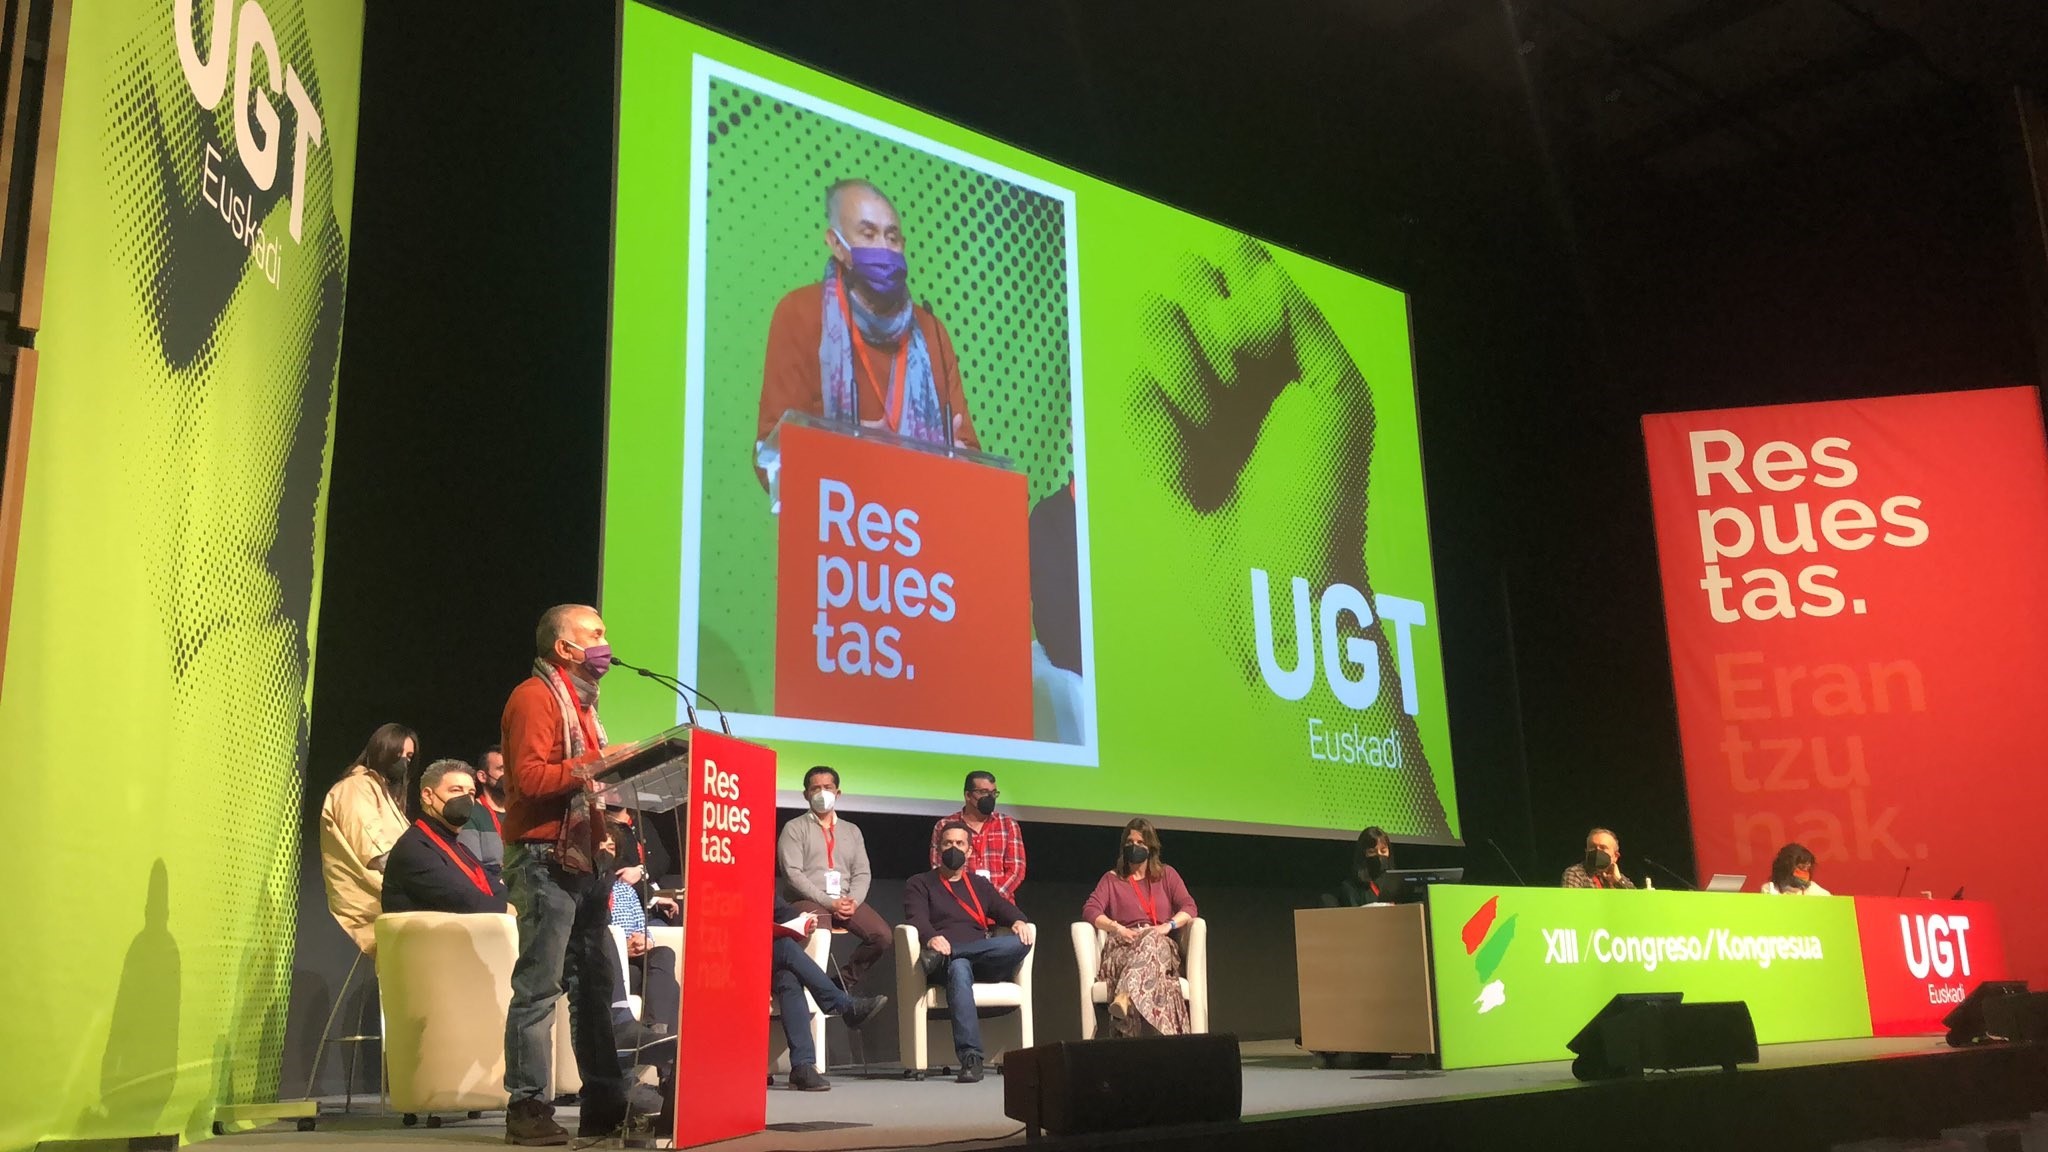 Álvarez cree que UGT ha dado una "lección" al participar Otegi en el congreso del sindicato